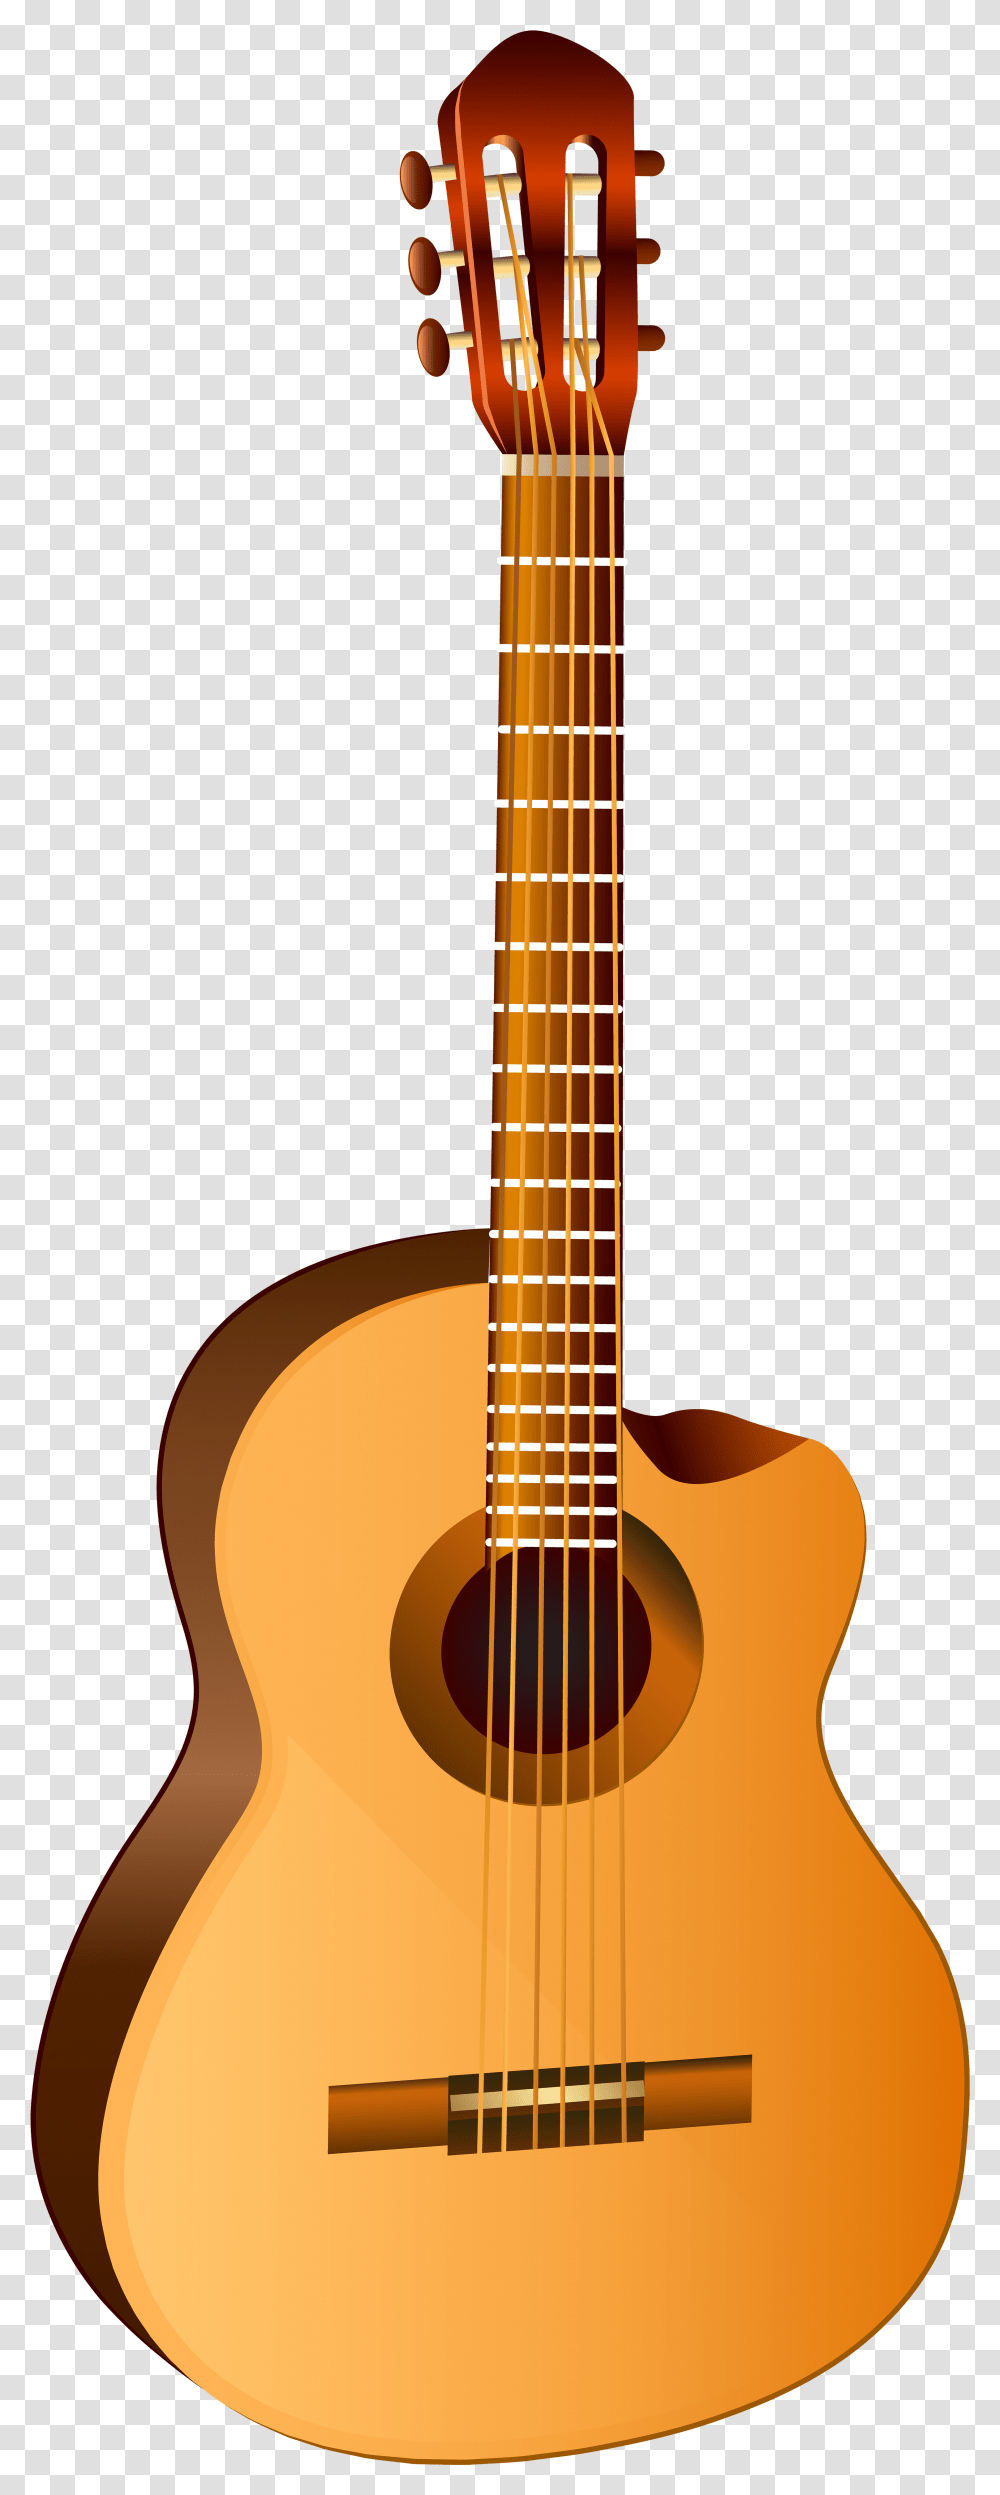 Classic Guitar Clip Art Image Yamaha Ll Ta, Leisure Activities, Musical Instrument, Bass Guitar, Electric Guitar Transparent Png